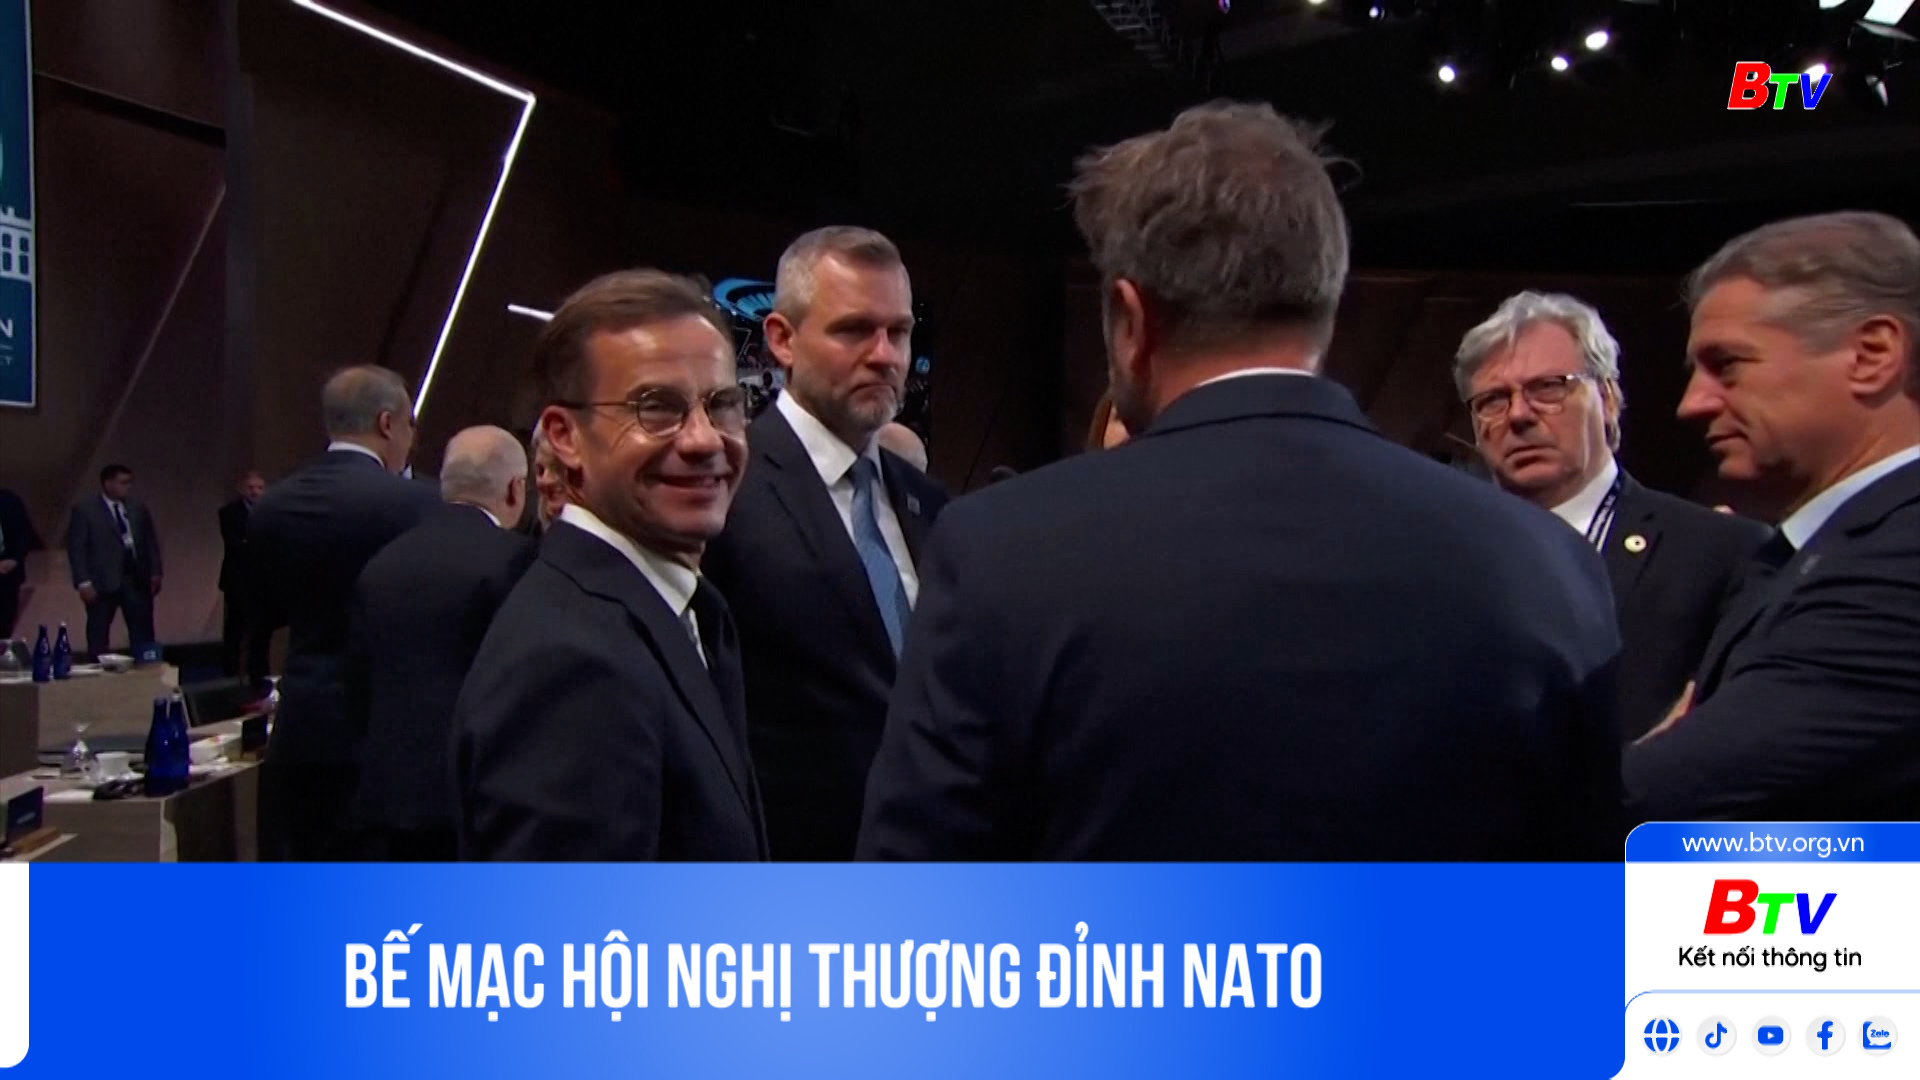 Bế mạc Hội nghị thượng đỉnh NATO